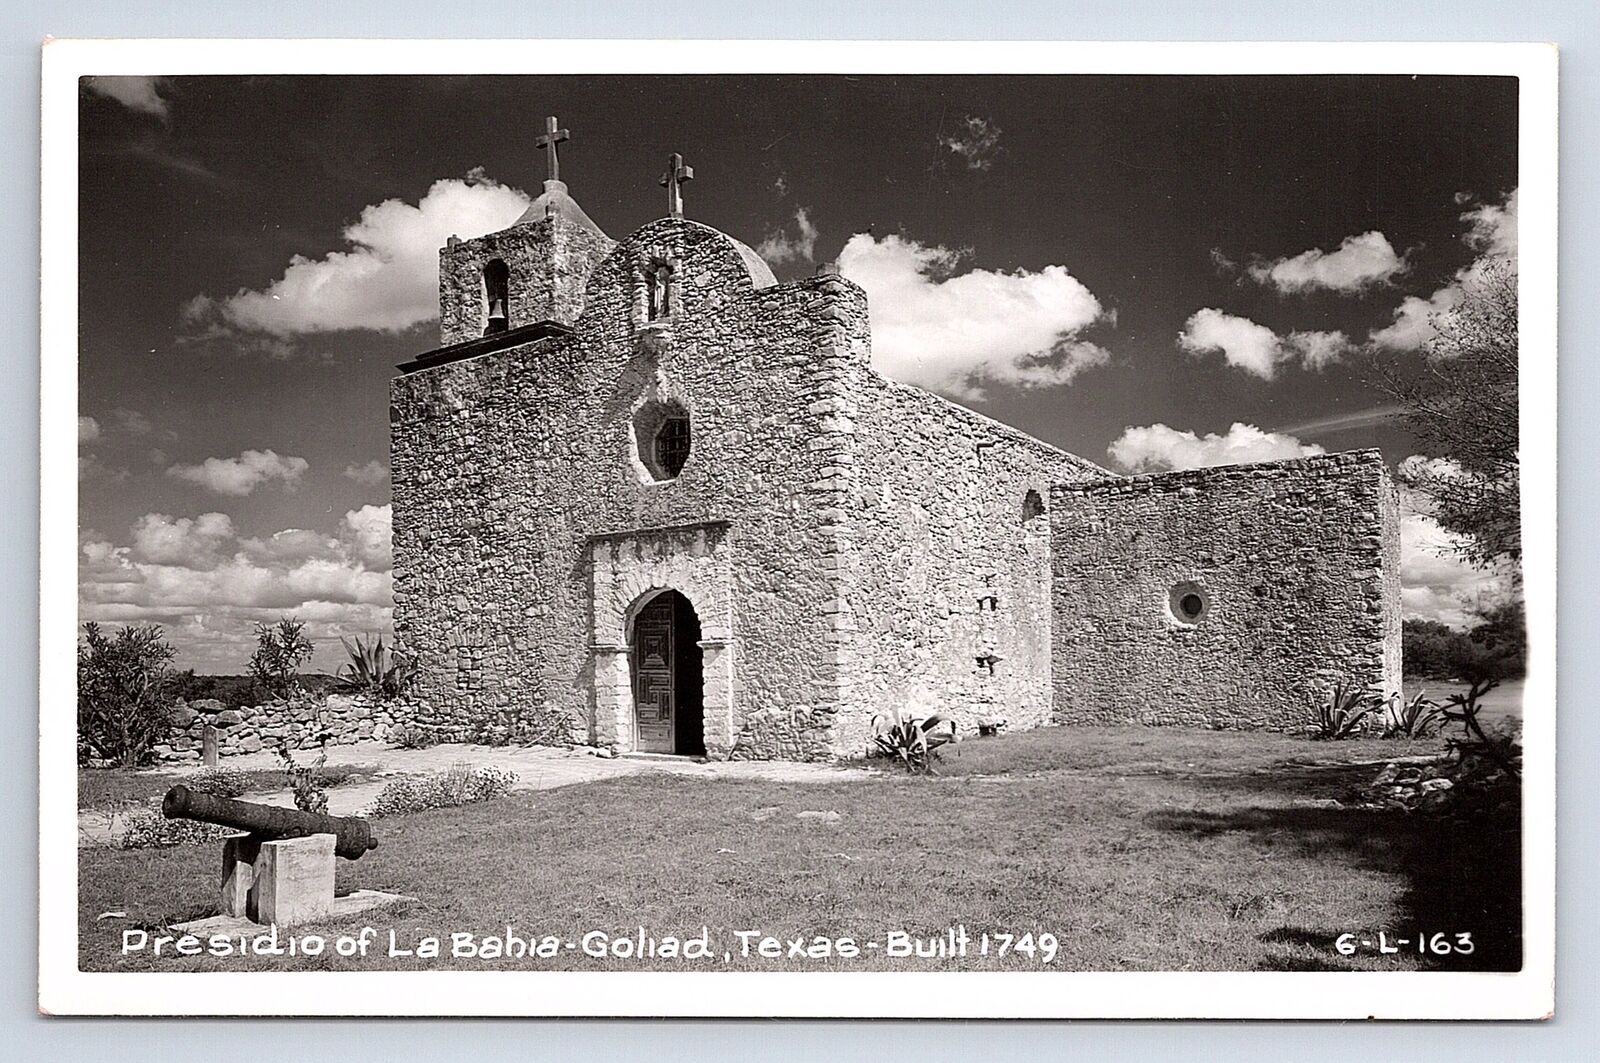 Postcard RPPC Presidio La Bahia-Goliad Texas Built 1749